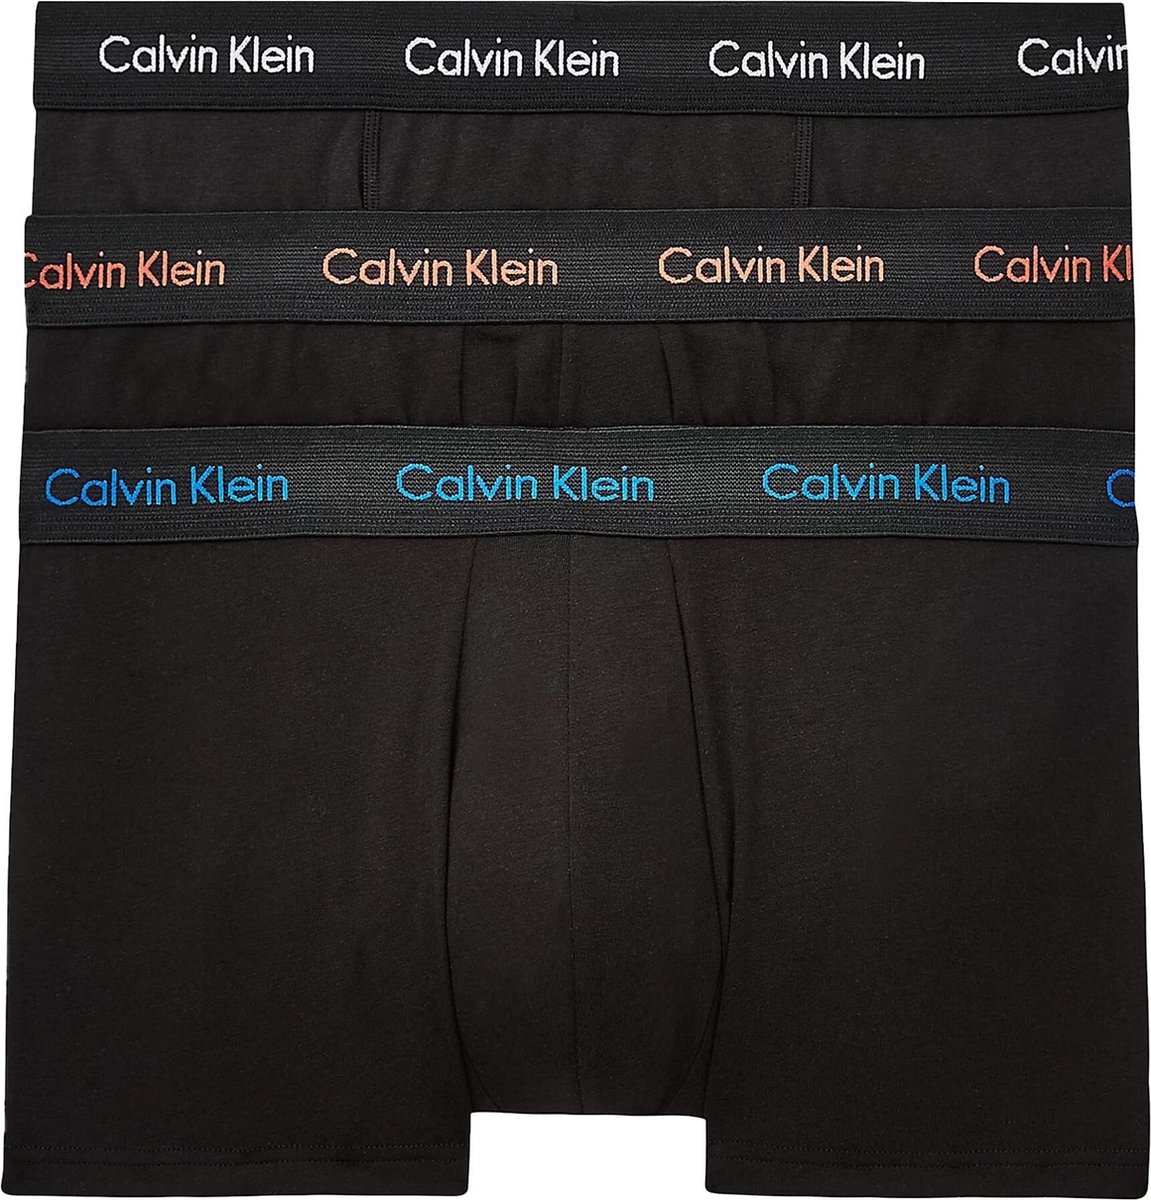 Calvin Klein Onderbroek - Mannen - Zwart - Blauw - Wit - Oranje - Calvin Klein